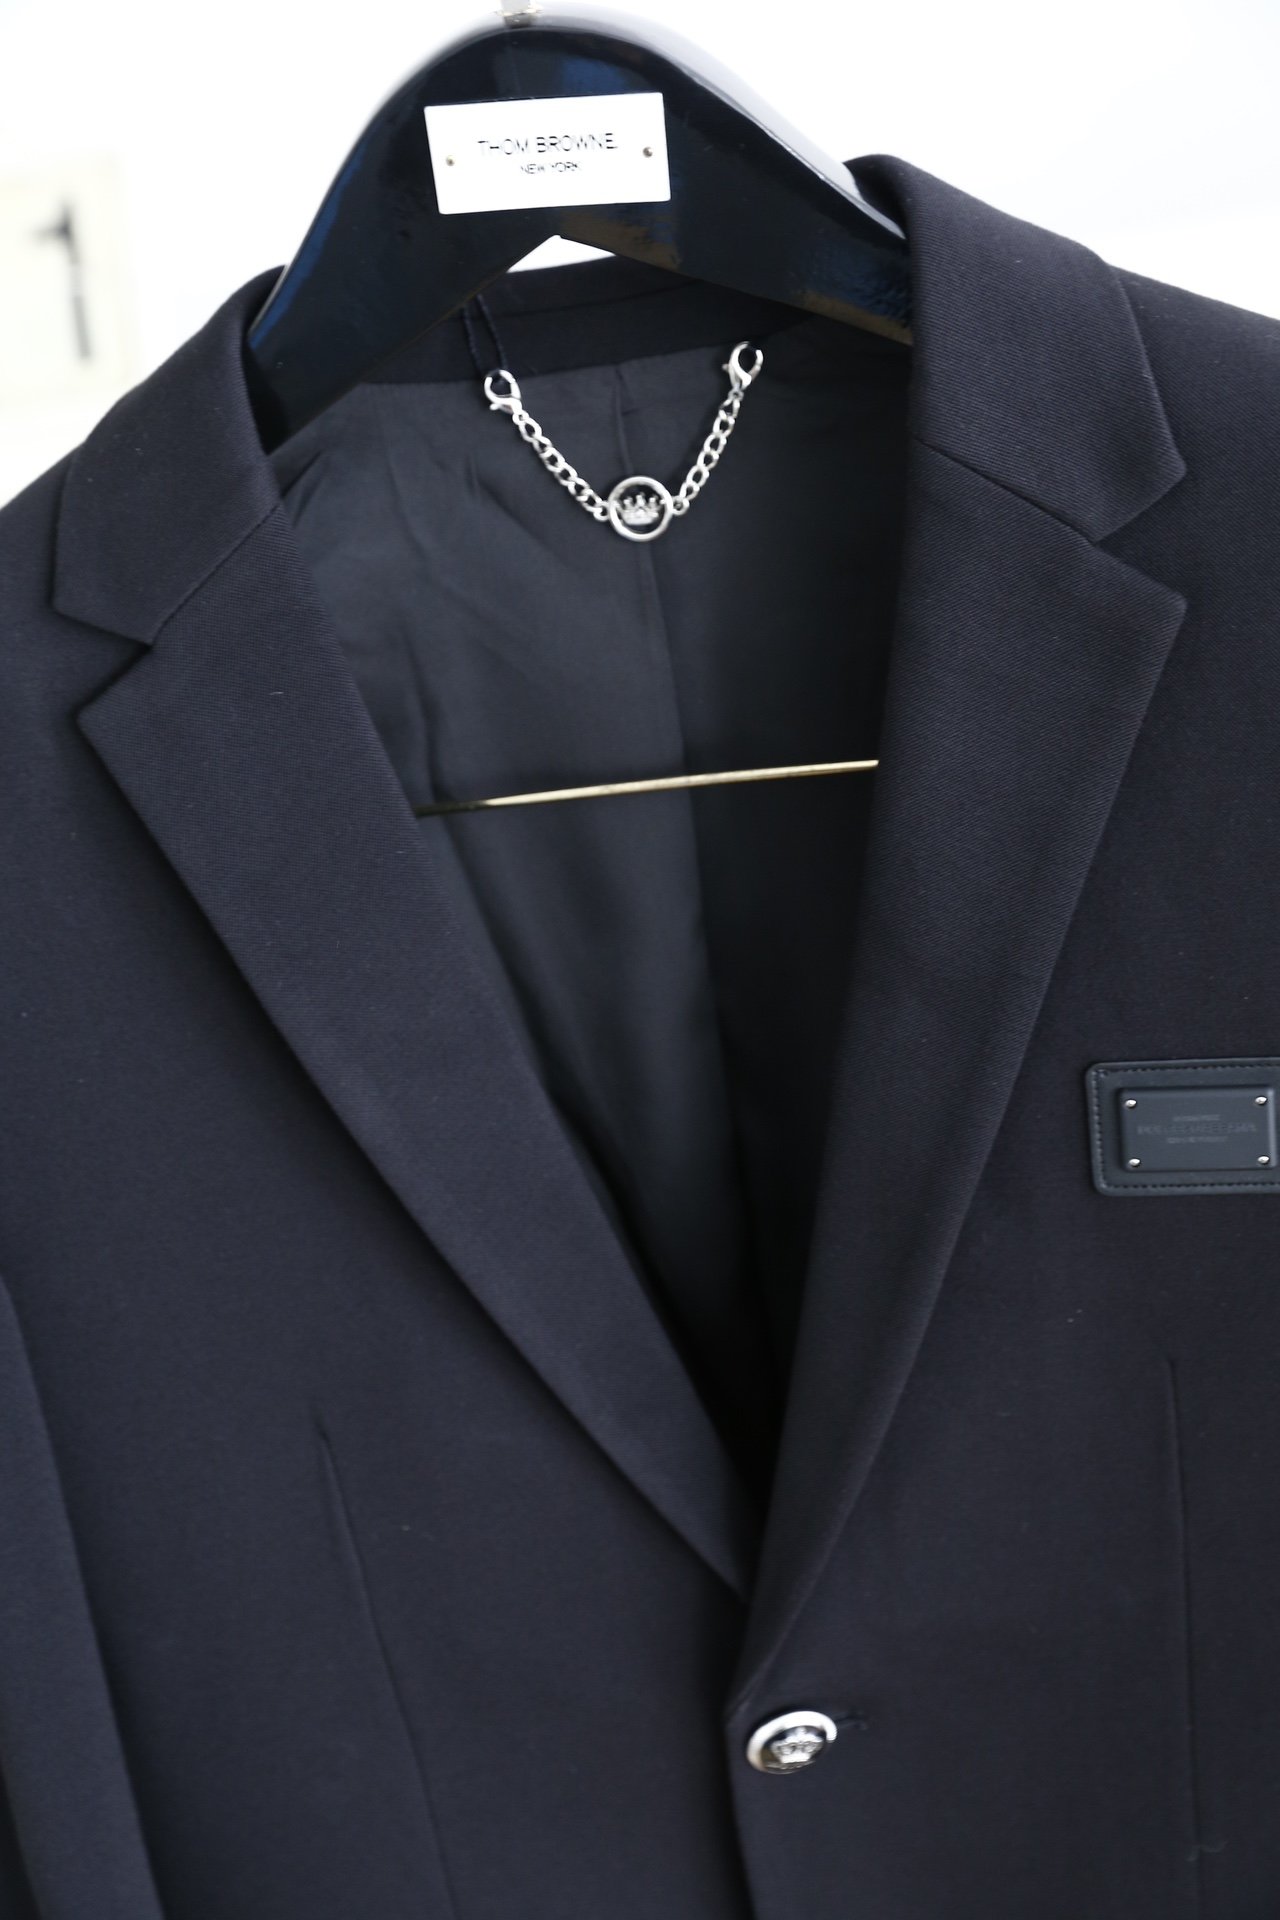 杜嘉班纳/Dolce&Gabbana.秋冬时尚男士西服贸易公司渠道货人气极高的一款单品通体的造型颇具设计